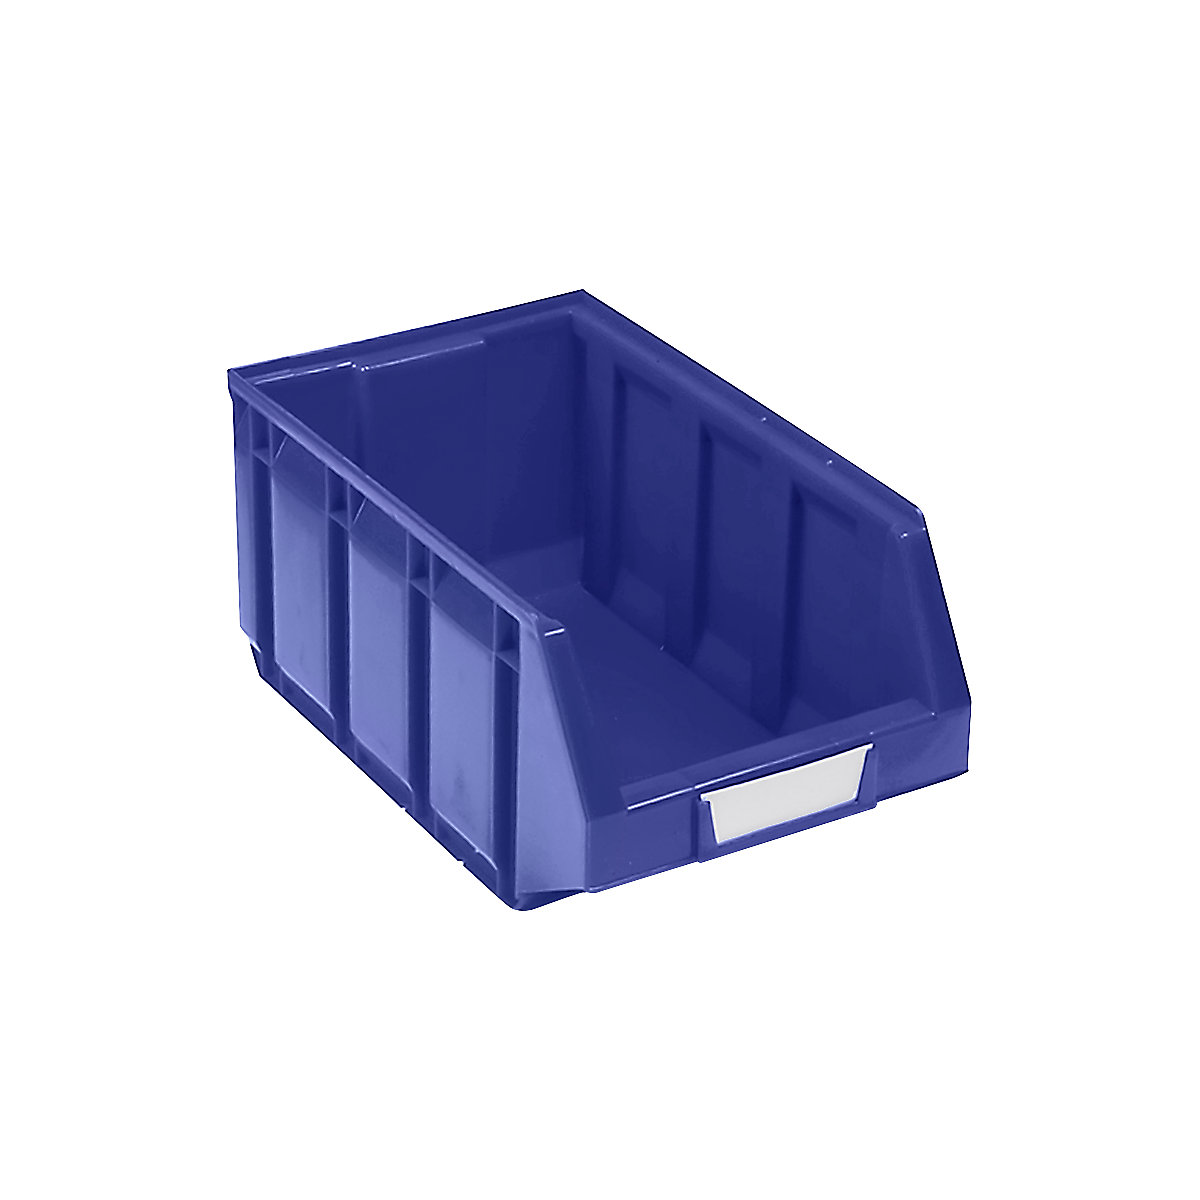 Sichtlagerkasten aus Polyethylen, LxBxH 345 x 205 x 164 mm, blau, VE 24 Stk-7